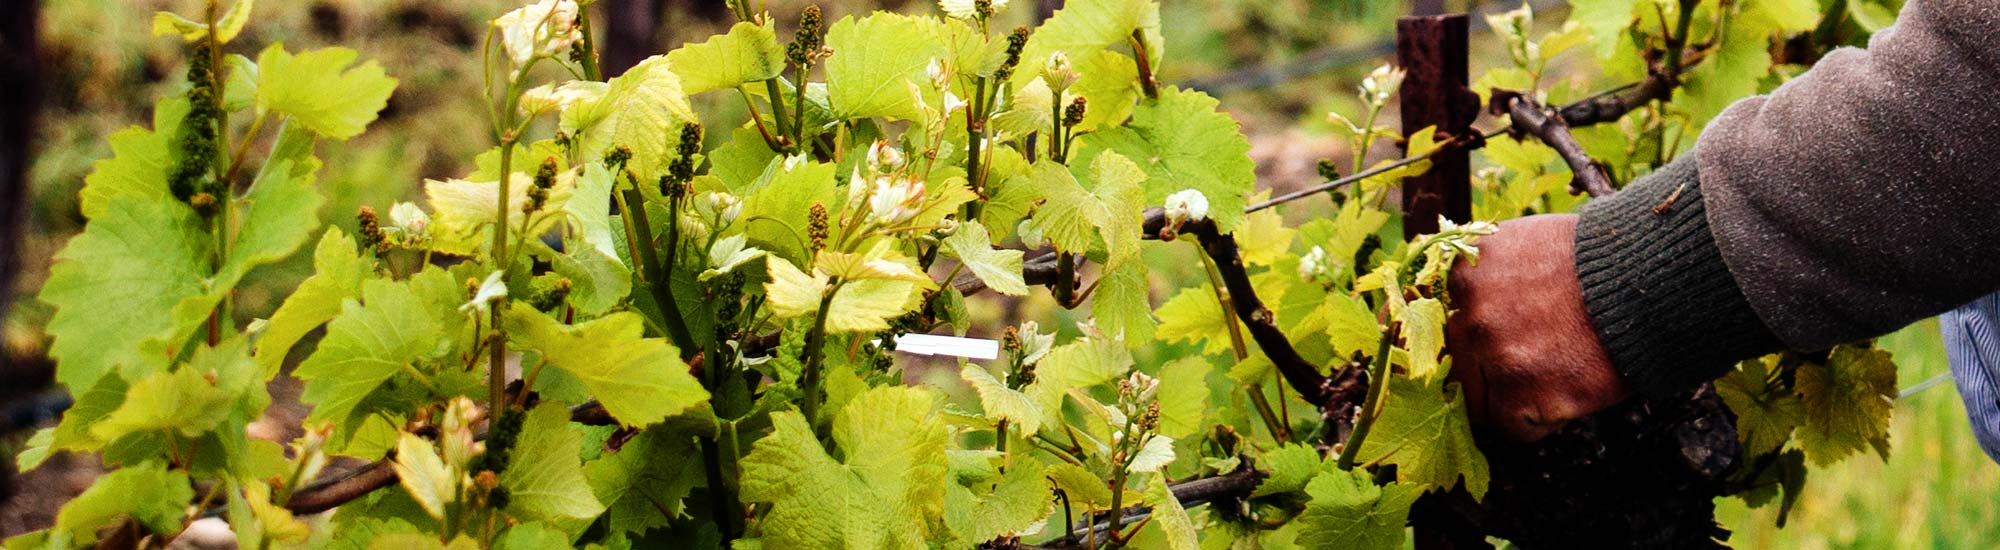 2018 Opolo Viognier Wine Review